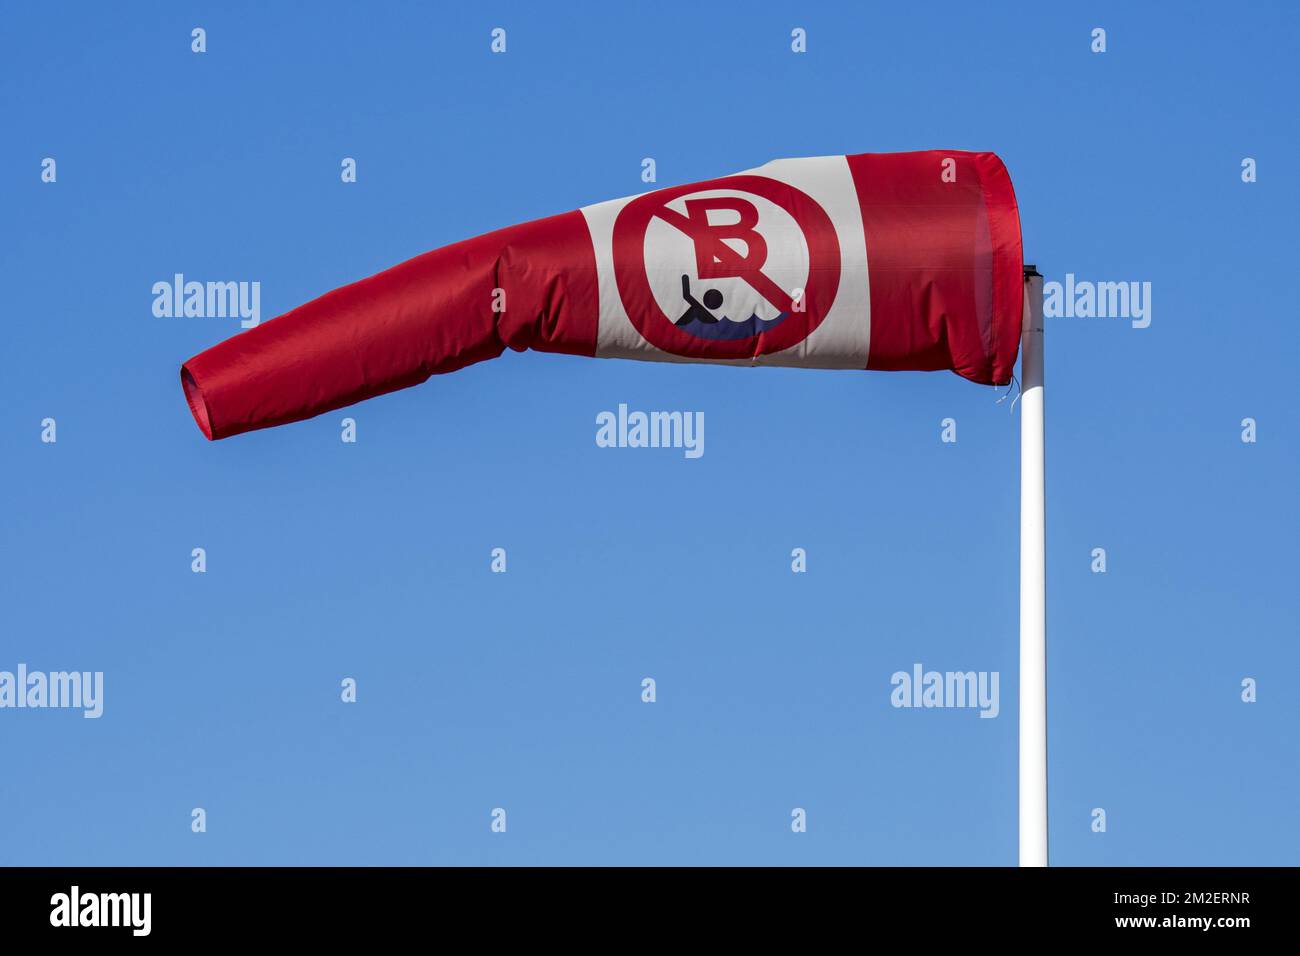 Calzino a vento rosso e bianco senza nuoto / senza avviso di balneazione che mostra la direzione e la velocità del vento | Manica à aria / manica à sfiato 07/02/2018 Foto Stock